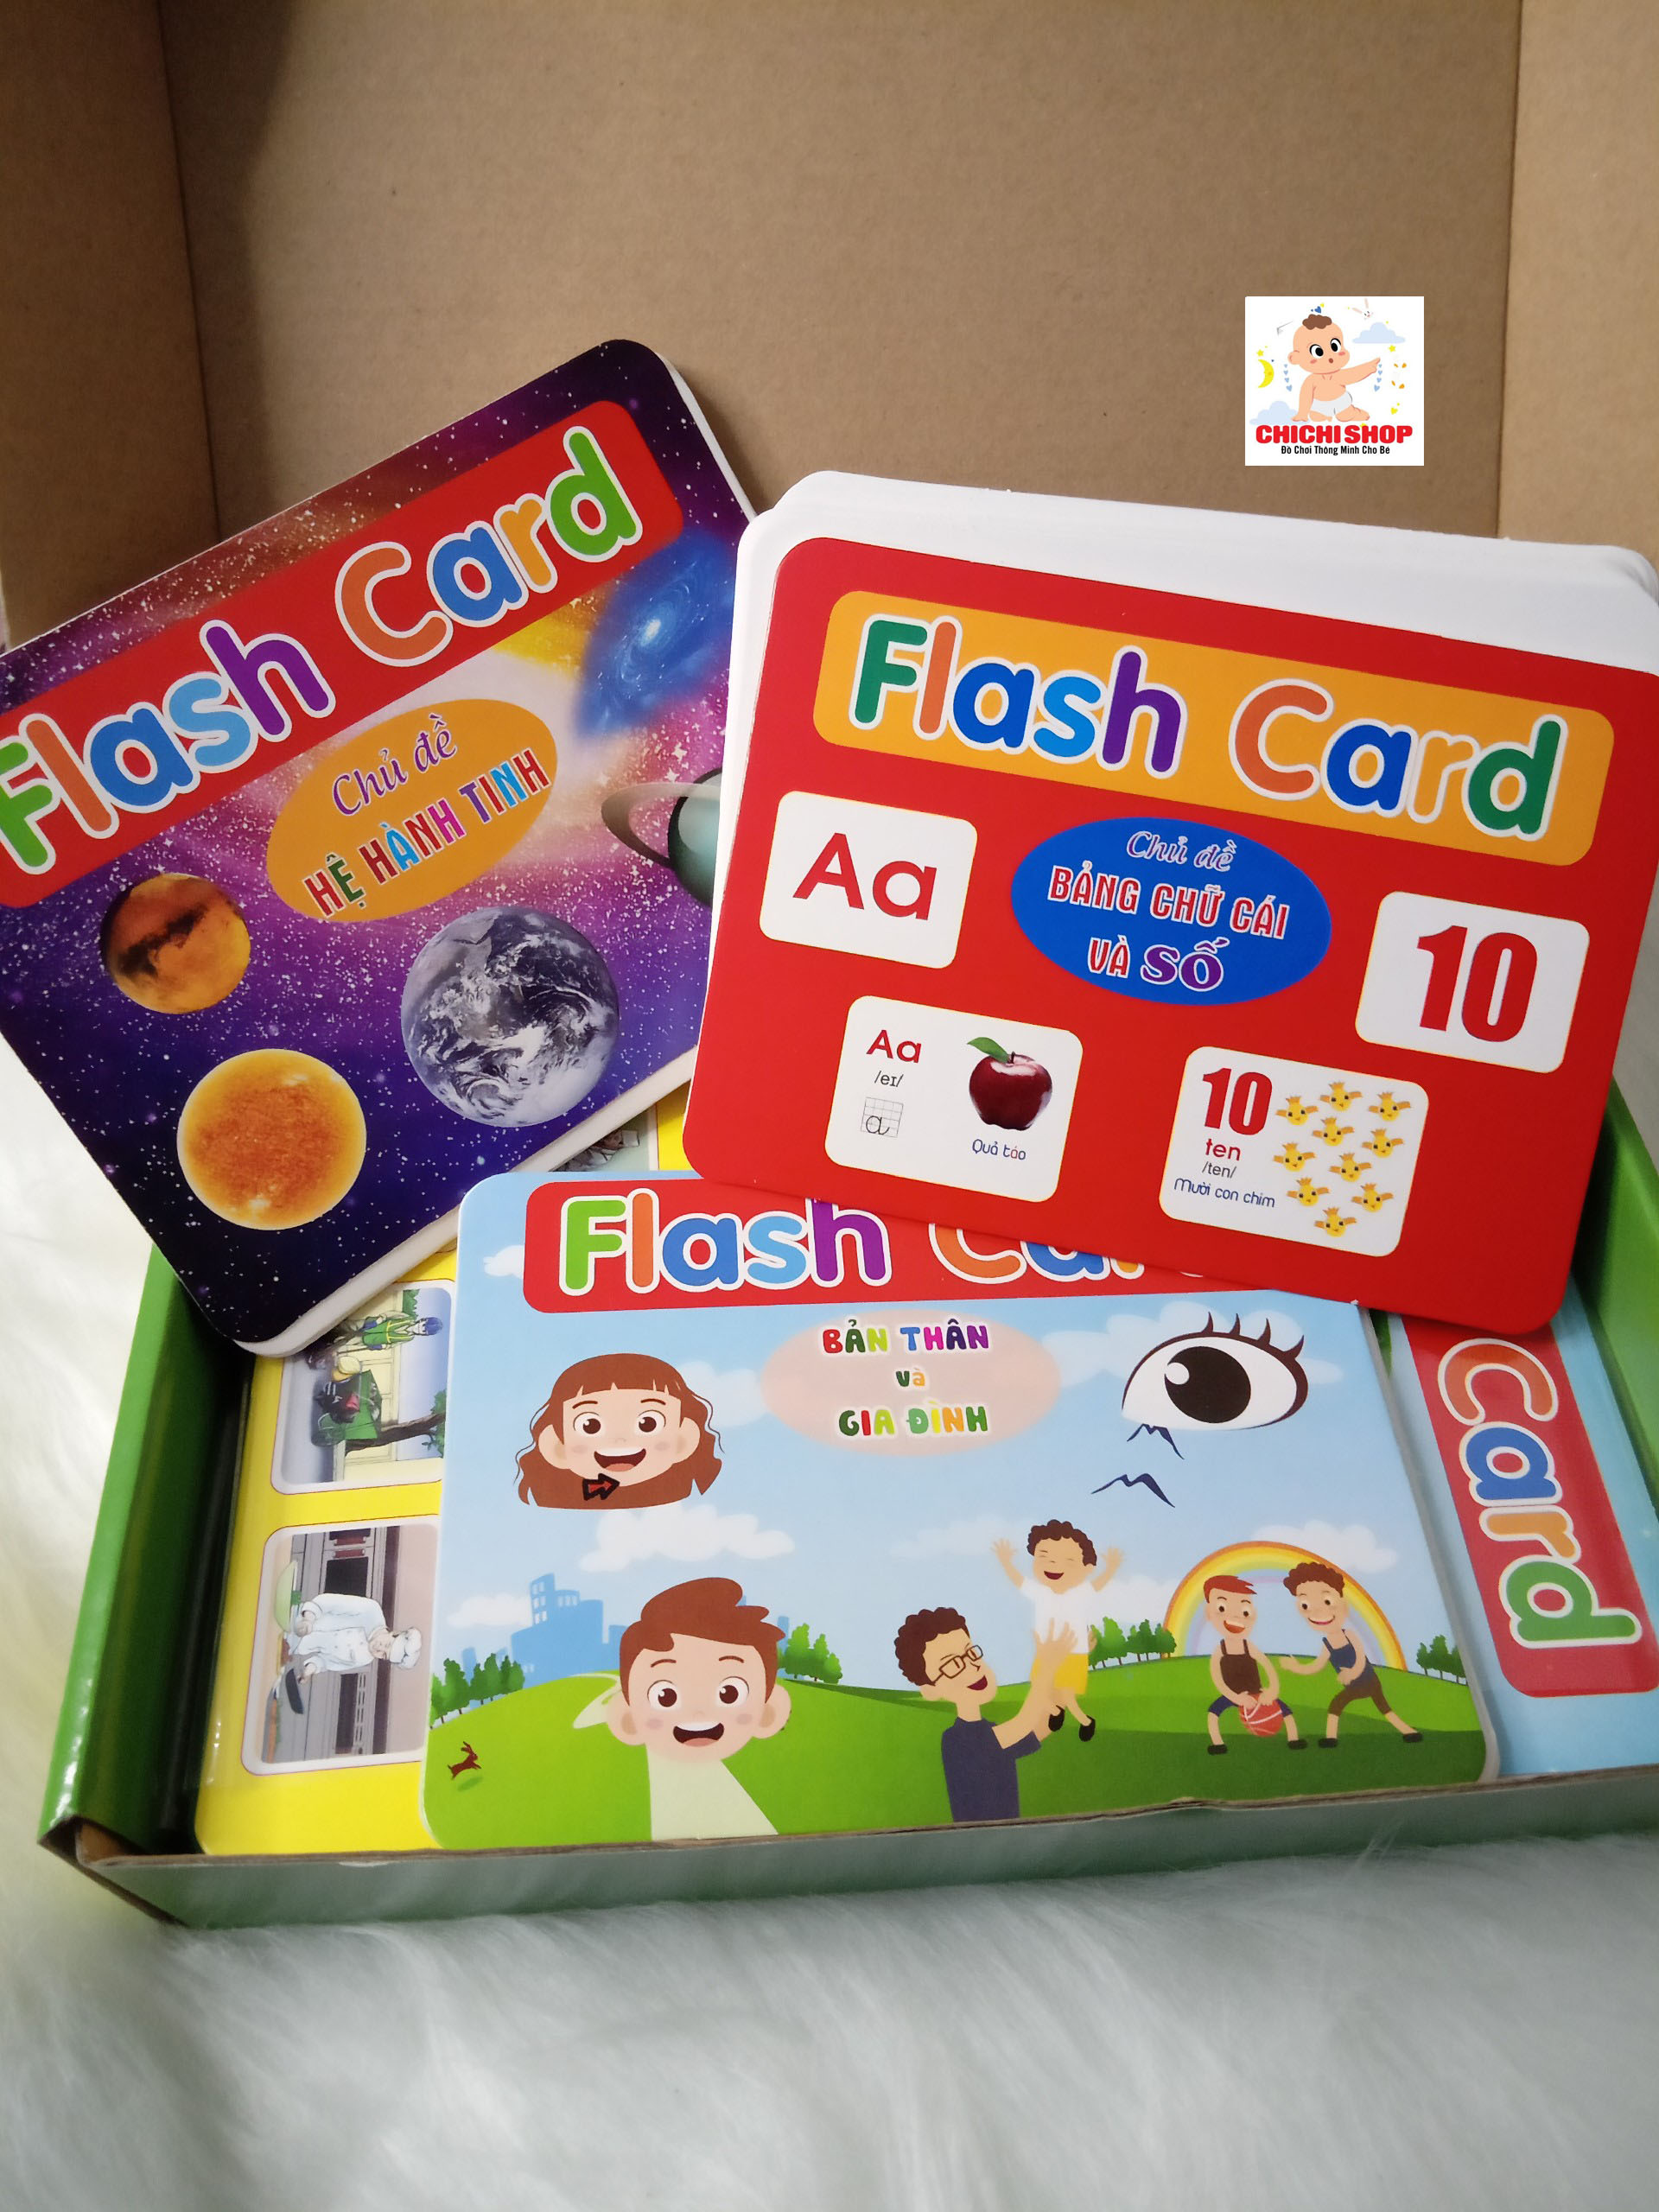 Flash card, Trọn Bộ 256 Thẻ Học Thông Minh 19 Chủ Đề Dạy Trẻ Về Thế Giới Xung Quanh